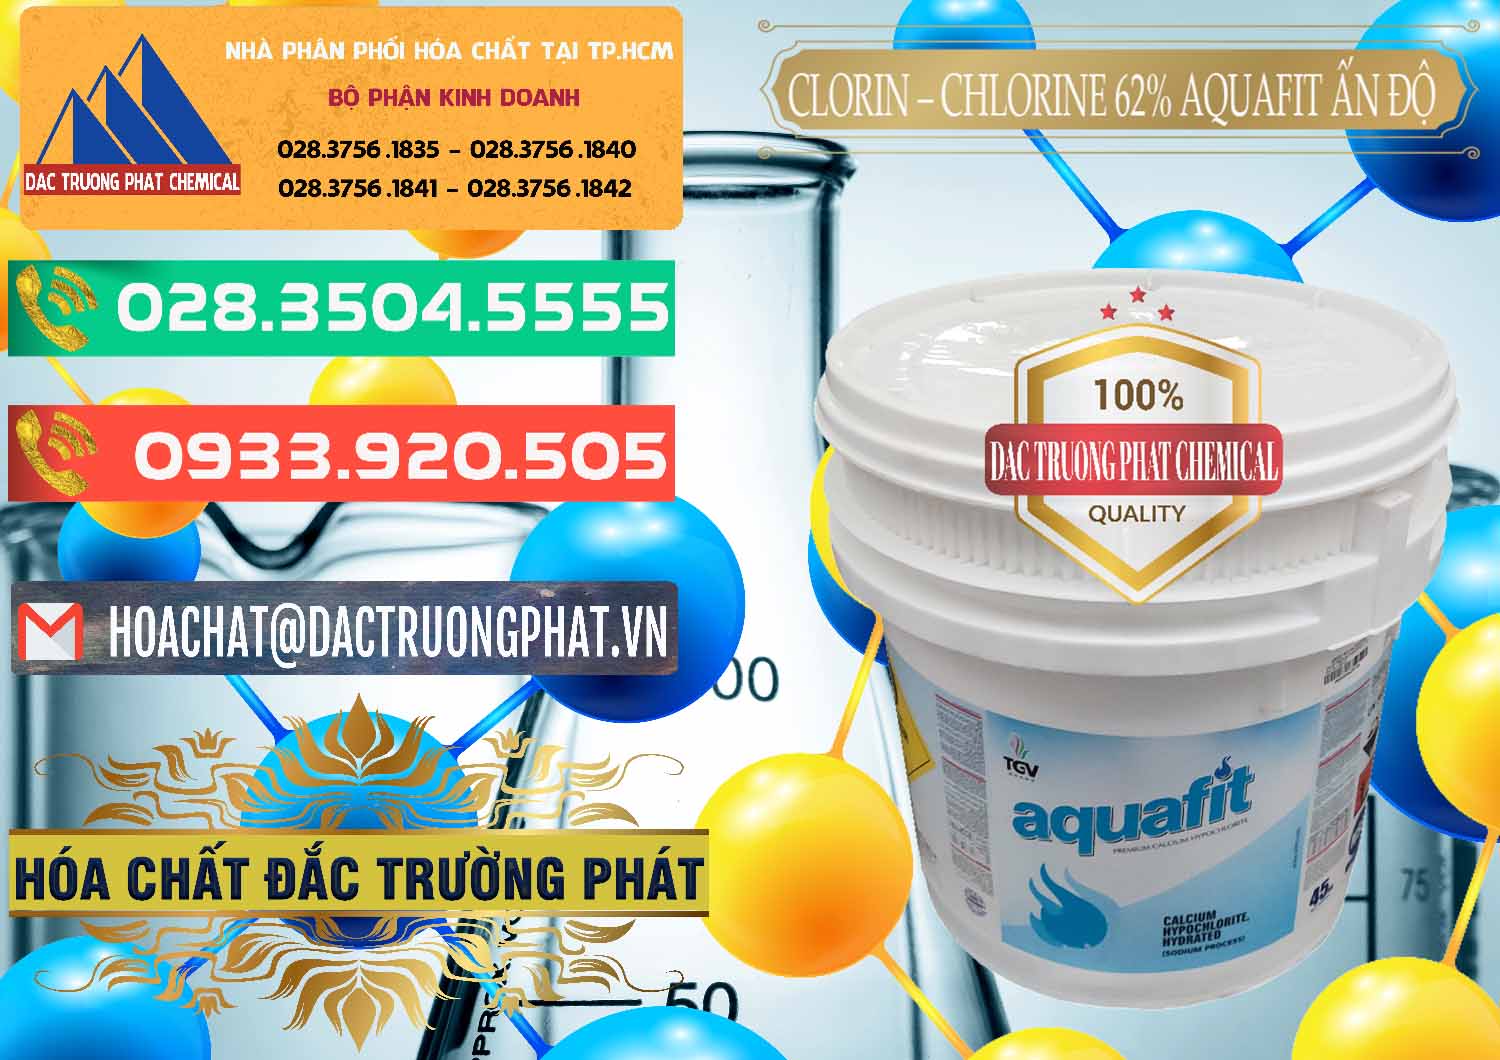 Nơi bán & cung cấp Clorin - Chlorine 62% Aquafit Thùng Lùn Ấn Độ India - 0057 - Đơn vị cung cấp và phân phối hóa chất tại TP.HCM - congtyhoachat.com.vn